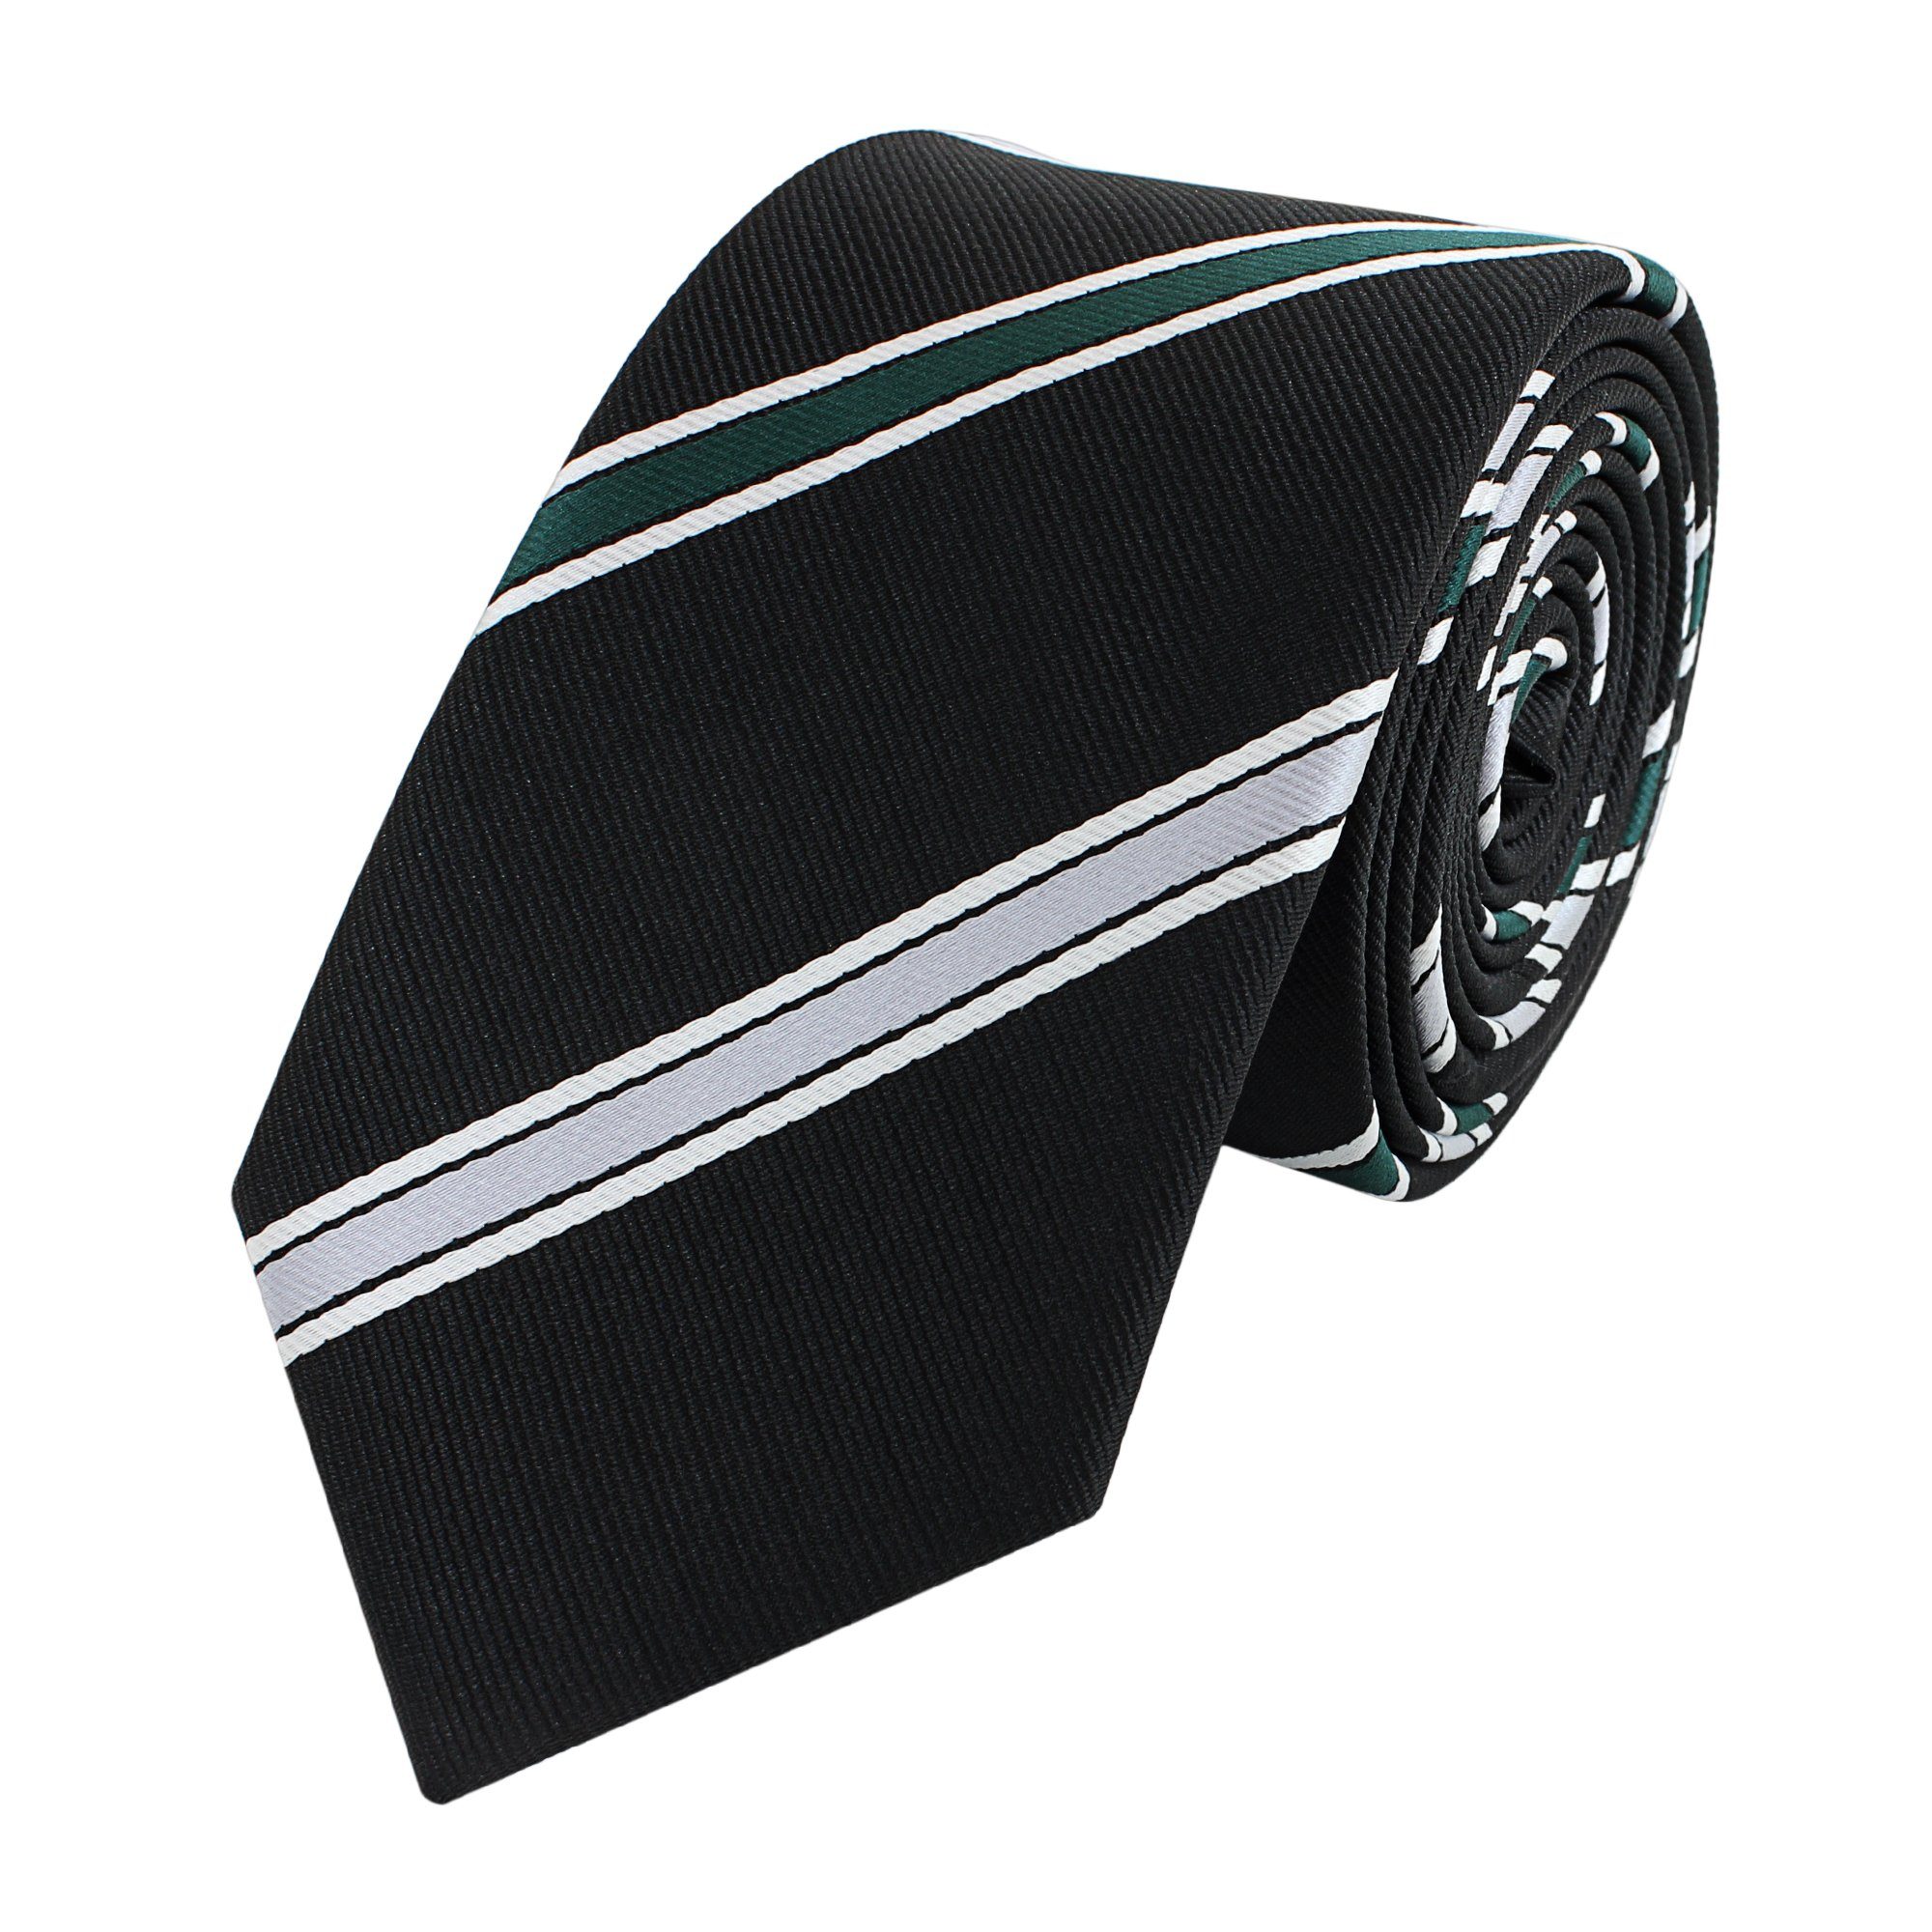 Fabio Farini Krawatte gestreifte Herren Krawatte - Tie mit Streifen in 6cm oder 8cm Breite (ohne Box, Gestreift) Schmal (6cm), Schwarz/Silber/Grün/Weiß